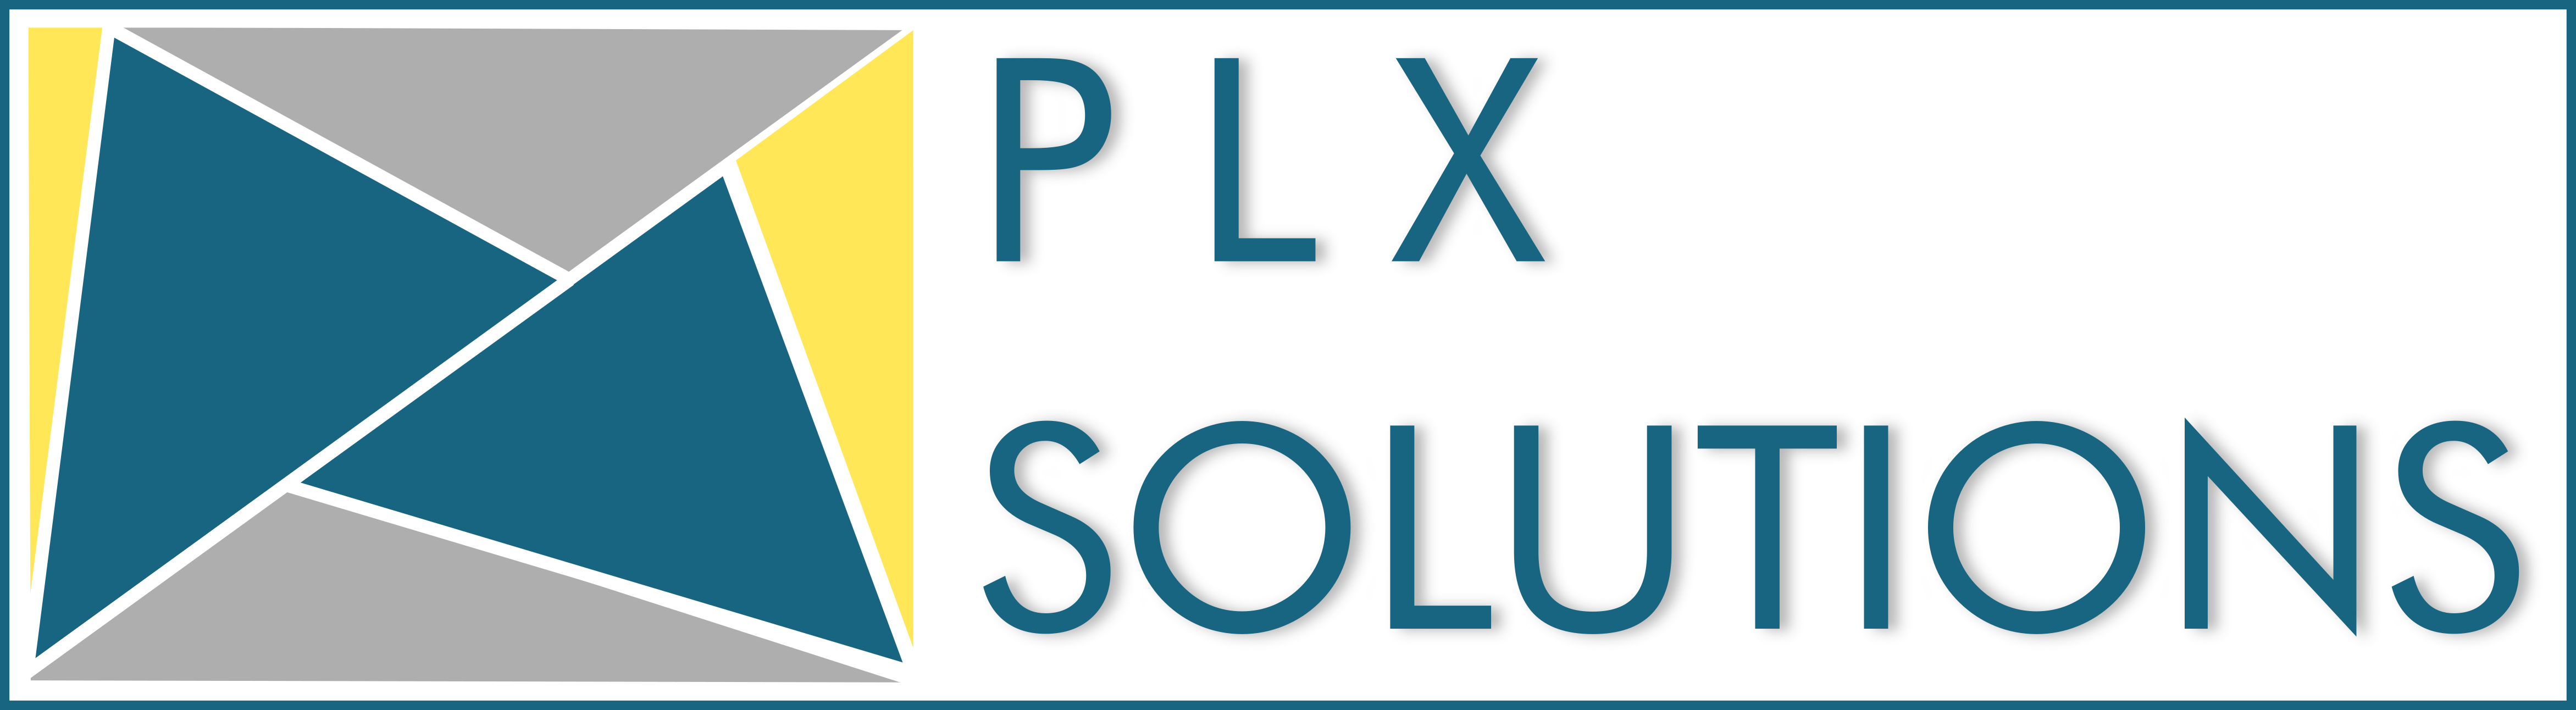 PLX SOLUTIONS - Consultant en Organisation, Gestion de projets et Maintenance industrielle